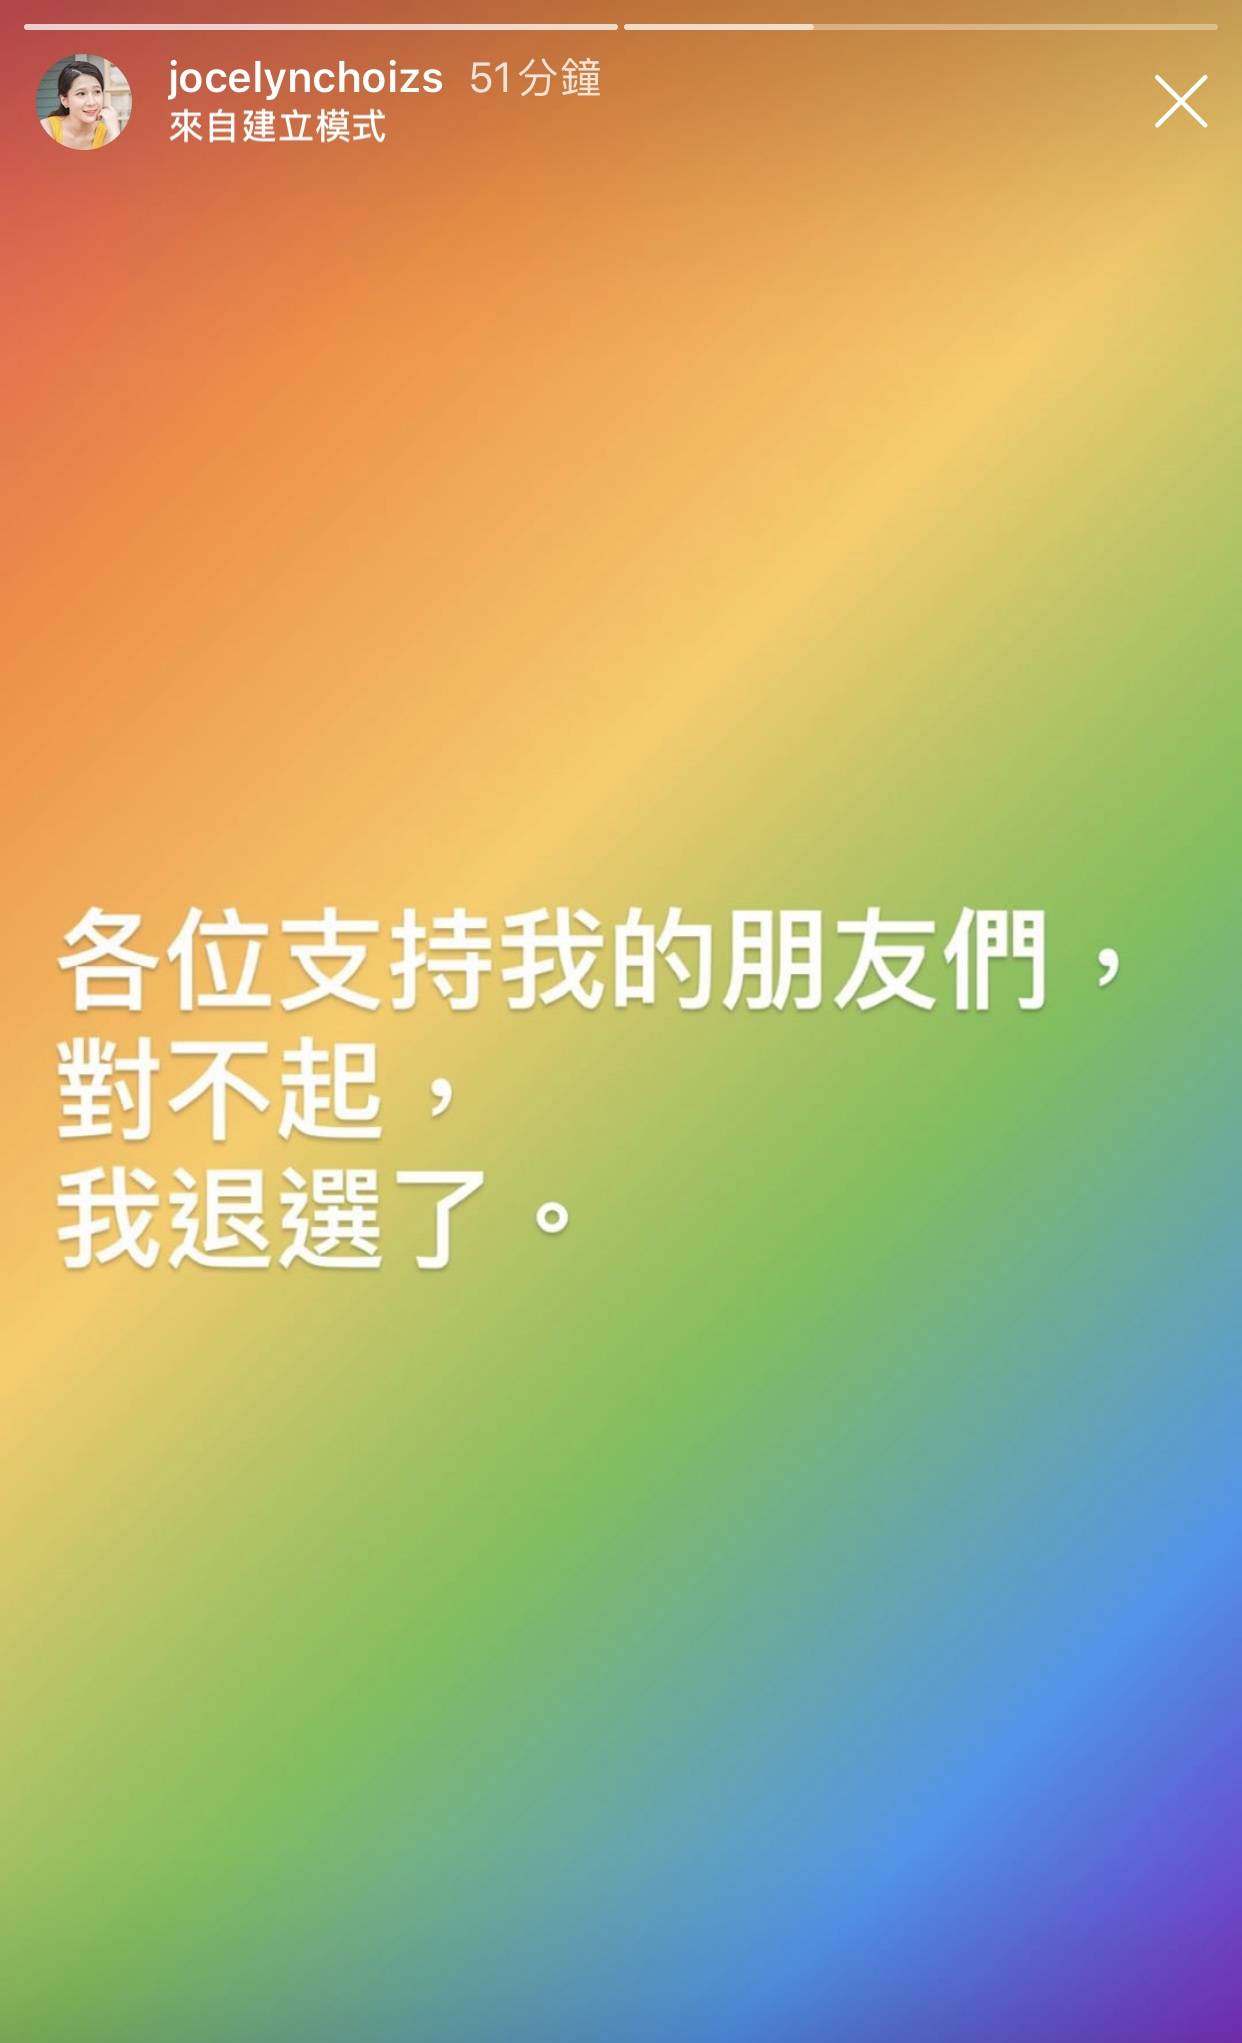 香港小姐 蔡頌思在IG向支持者公布自己退選了。